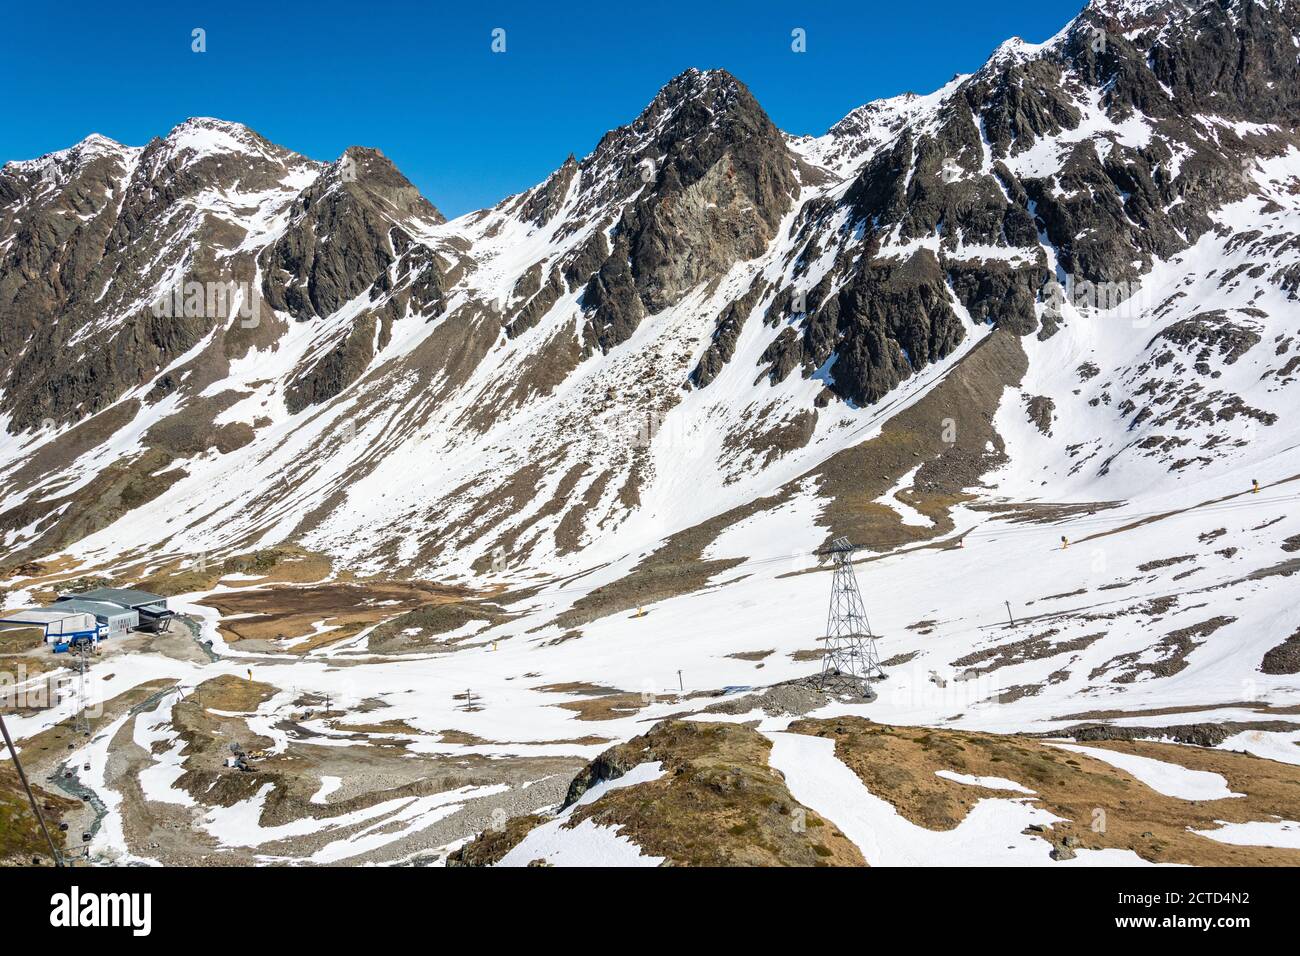 Mountainous landscape in Stubai Glacier area in Tyrol, Austria. Stock Photo